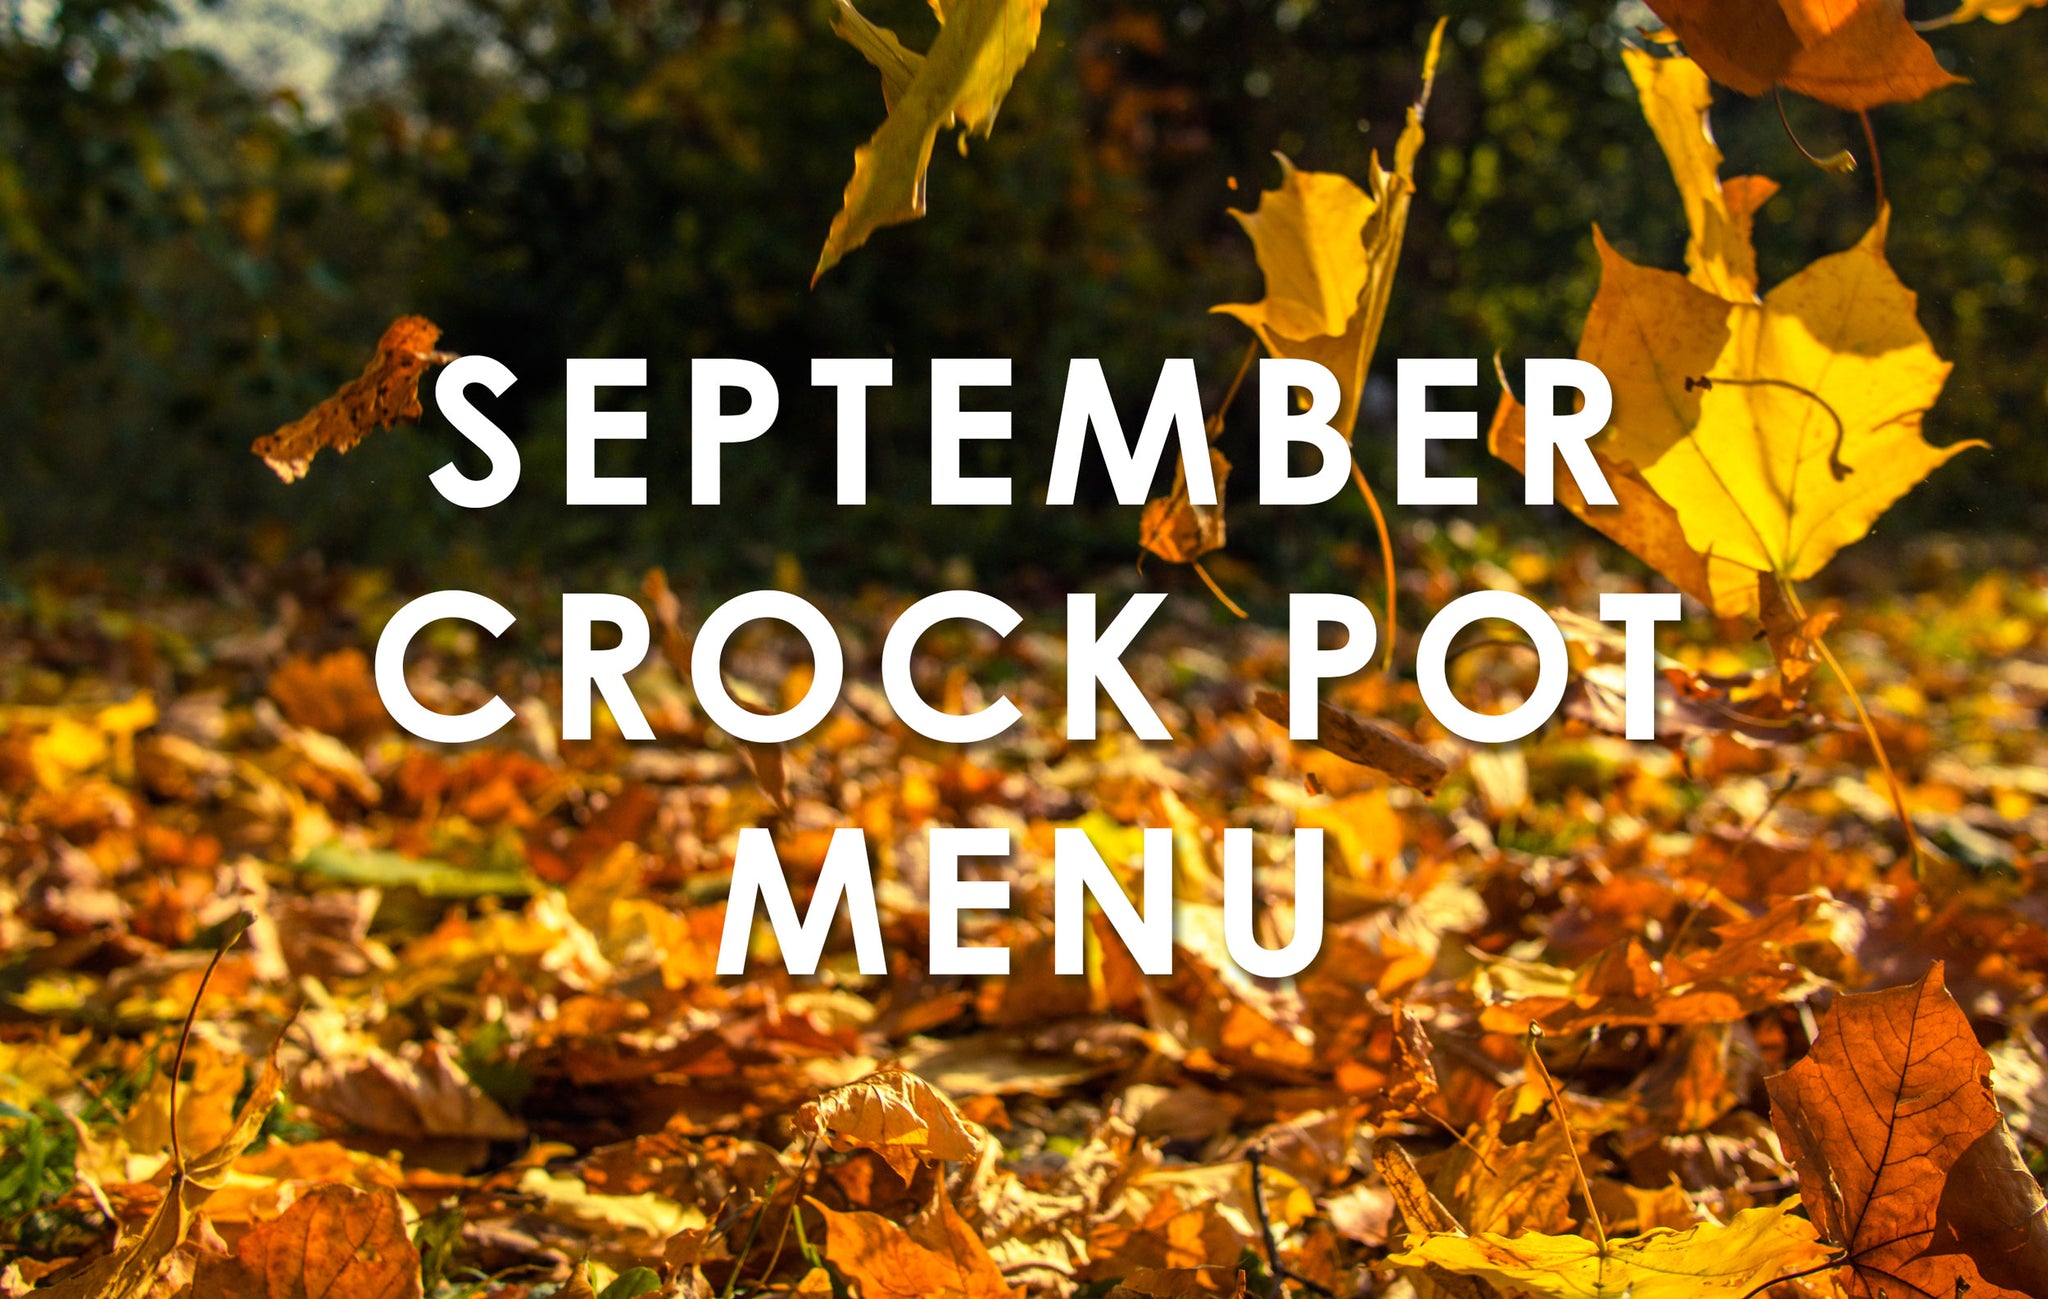 September Crock Pot Menu